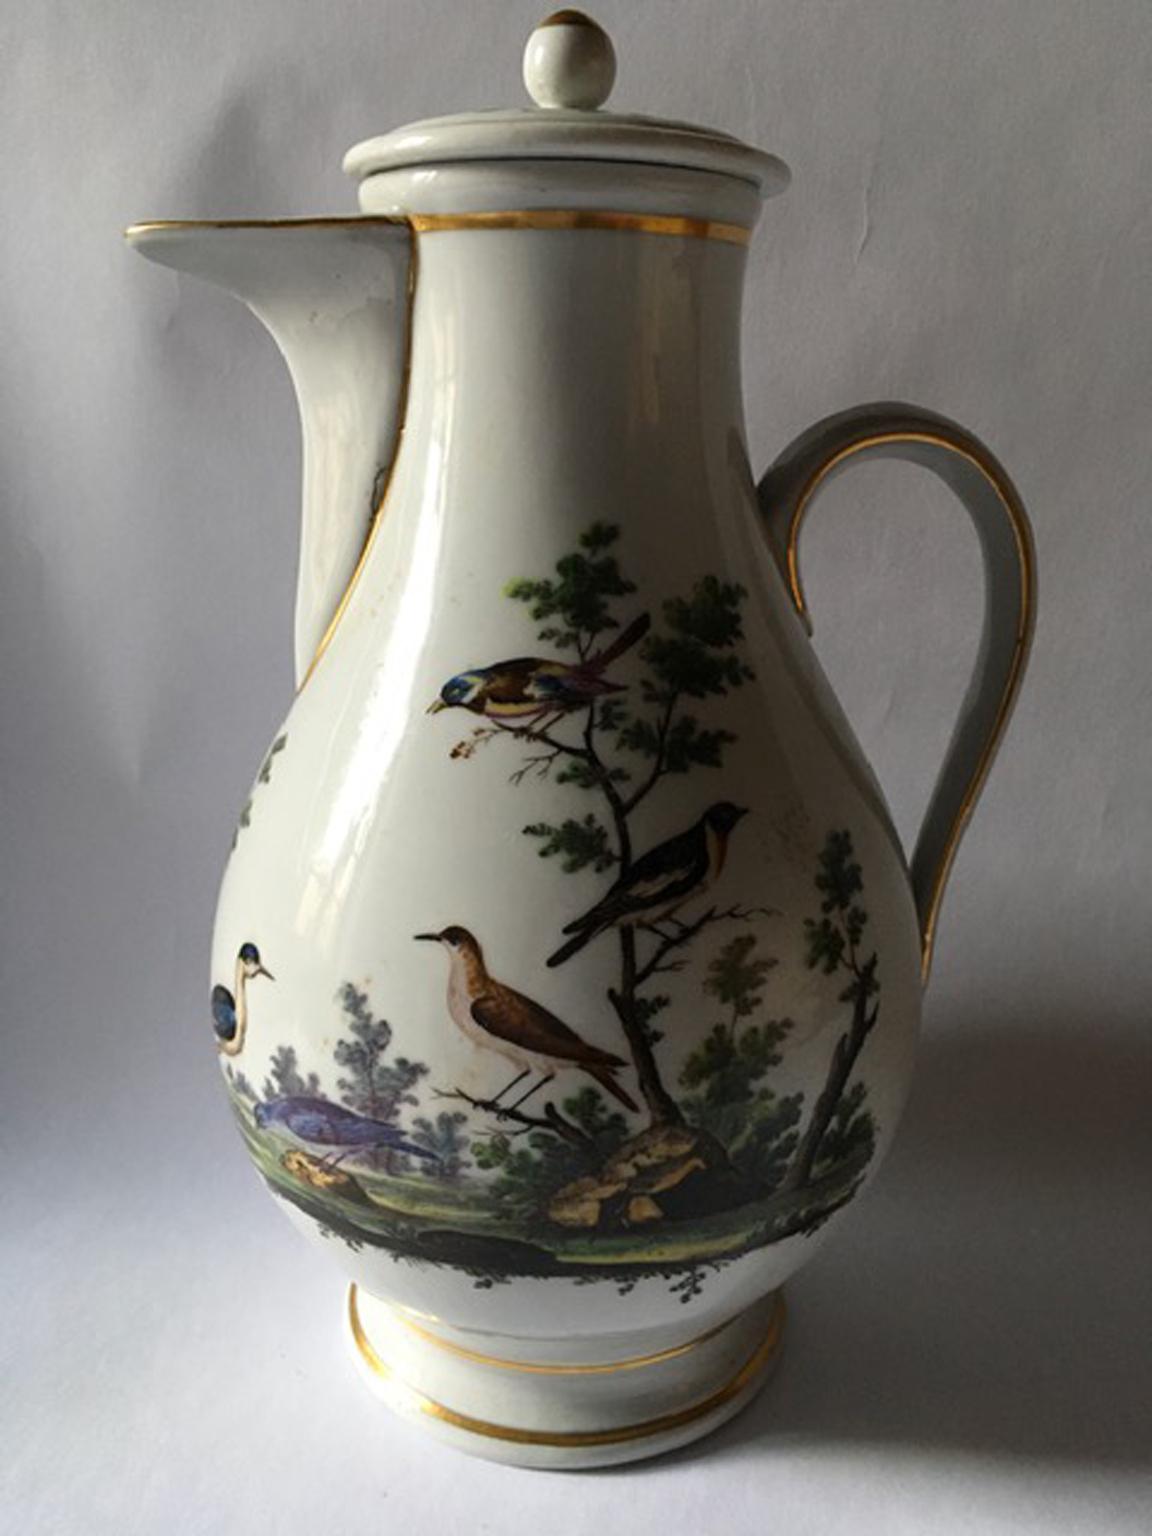 In dieser eleganten Kaffeekanne können wir die elegante Zeichnung mit einer Naturlandschaft voller Vögel bewundern.
Hergestellt in circa 1750, das Stück hat seine Zeit, aber es ist in gutem Zustand.
Ein Stück zum Sammeln.

Mit